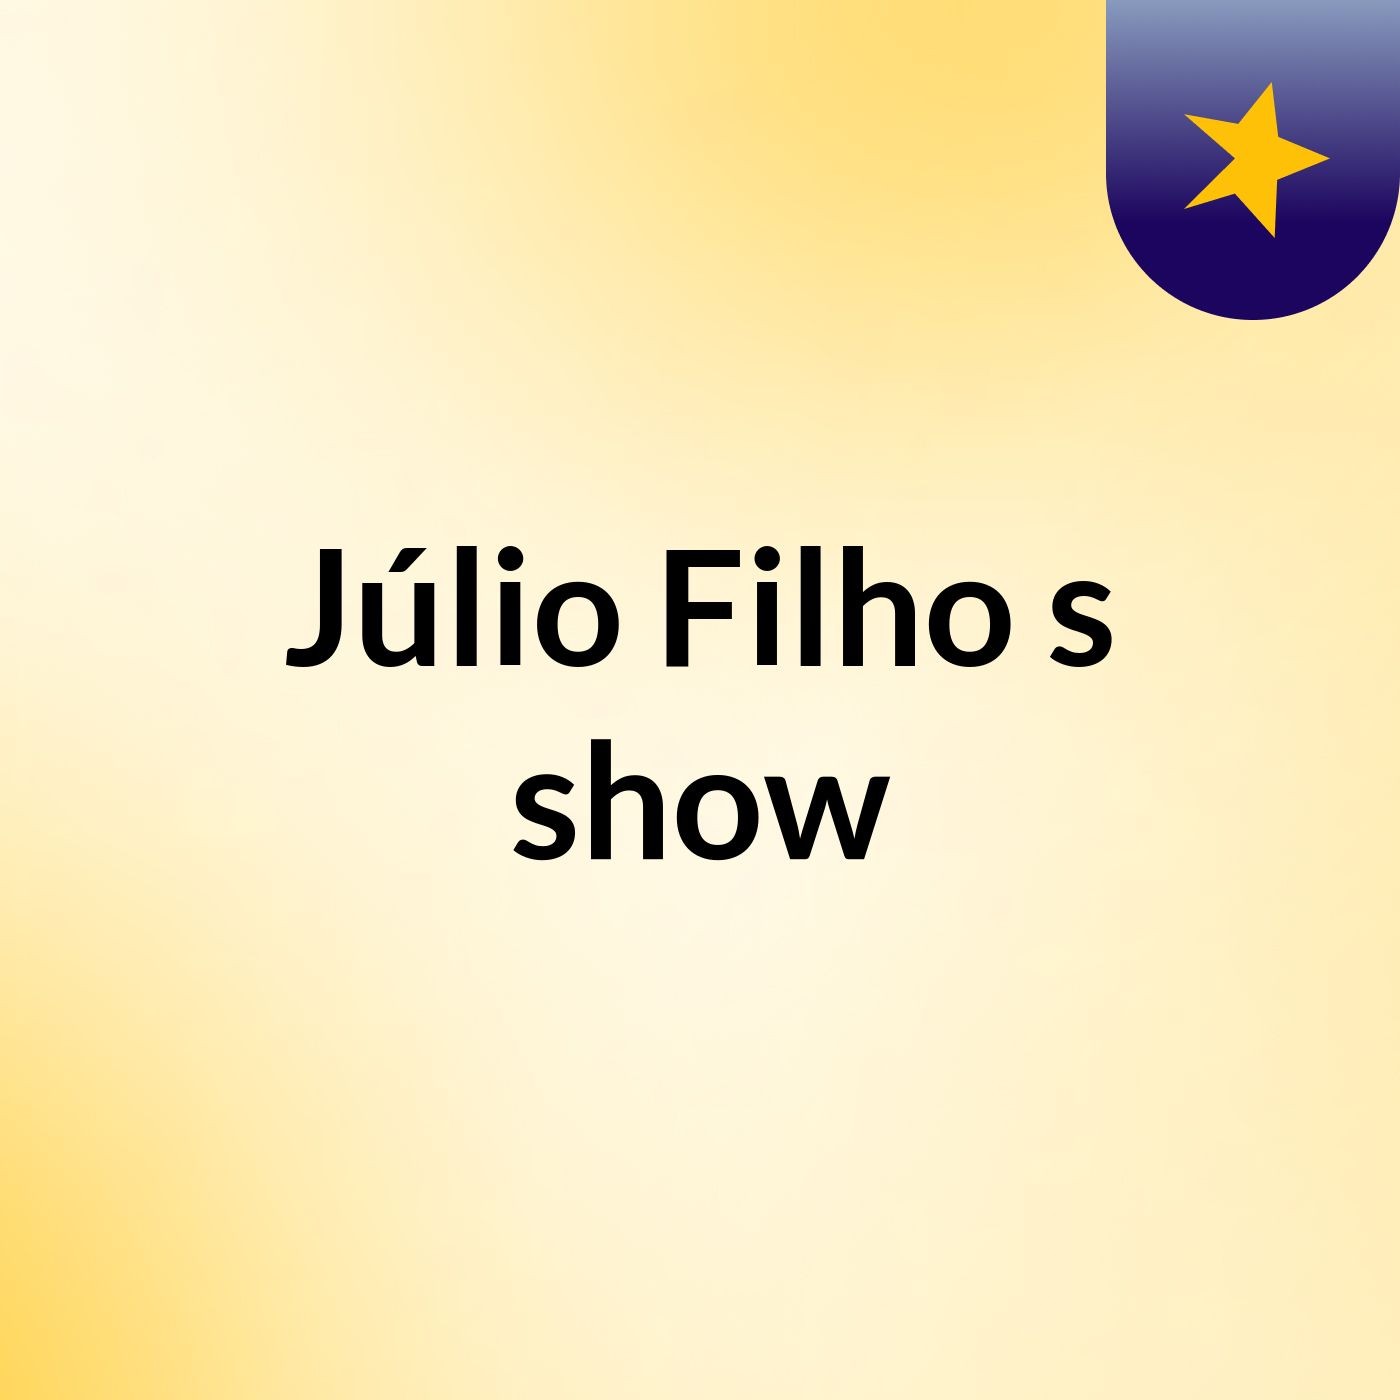 Júlio Filho's show